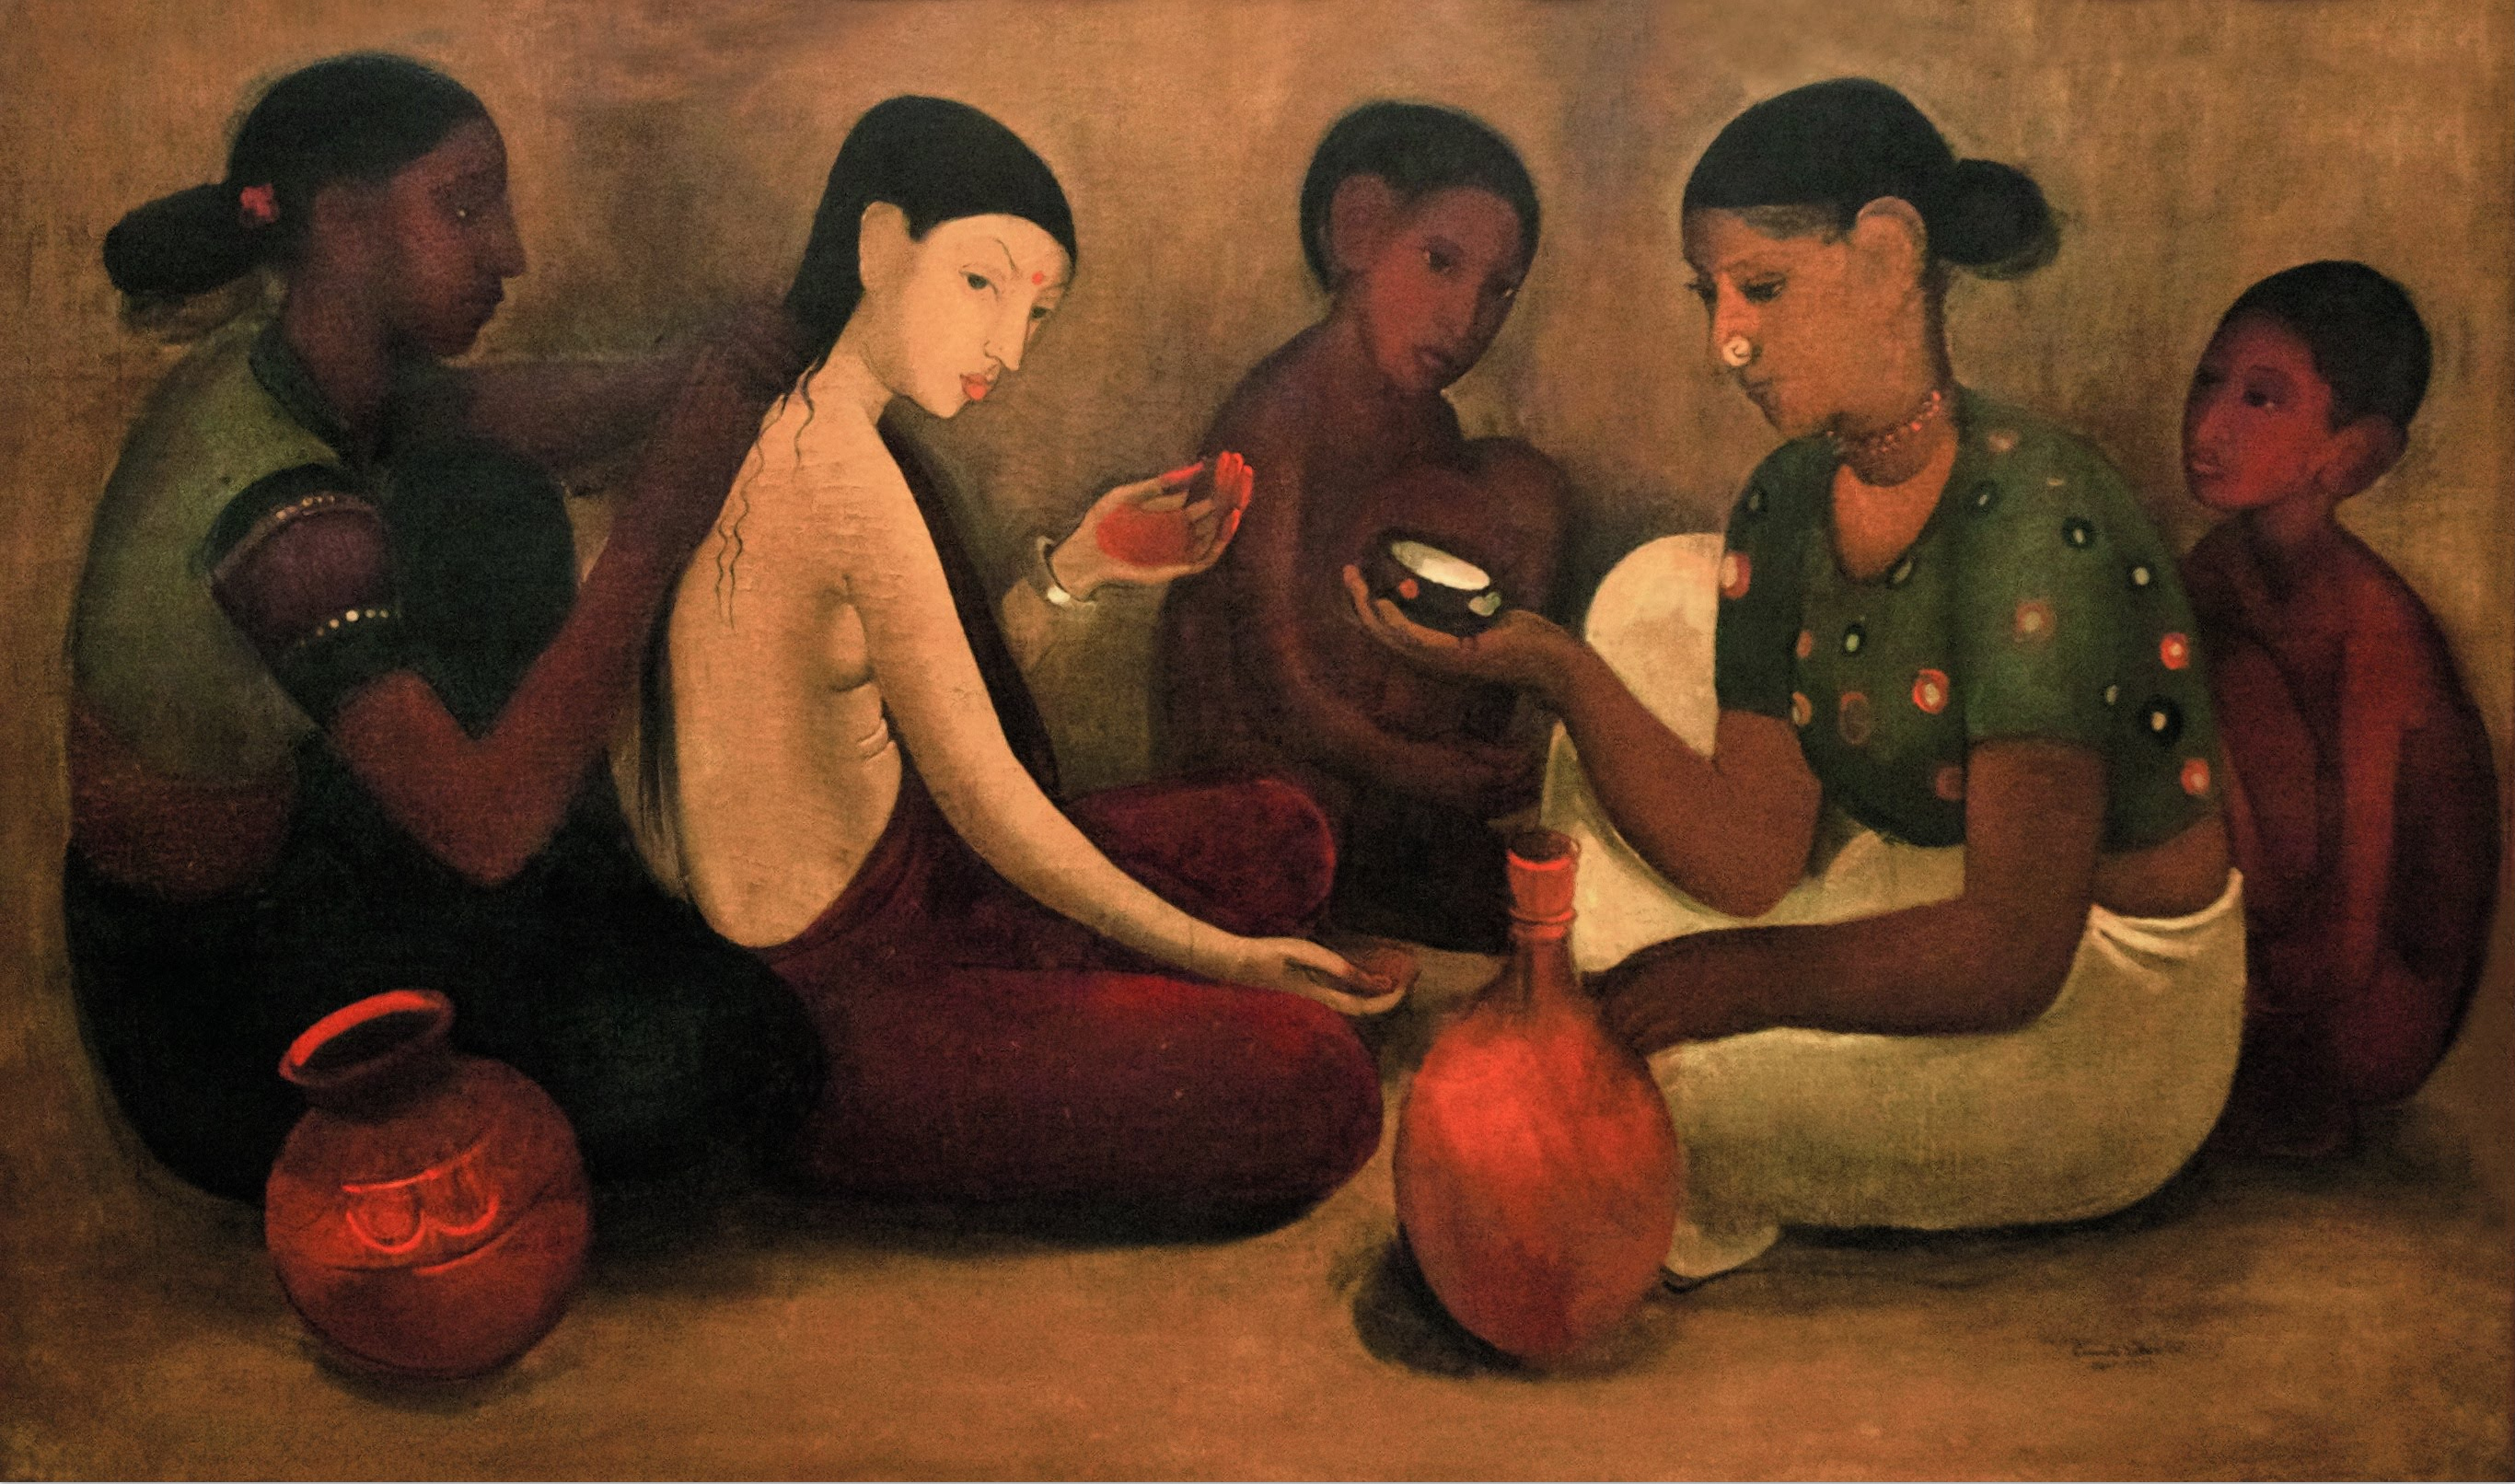 تزيين العروسة by Amrita Sher-Gil - 1937 م - 144,5 x 86 cm 